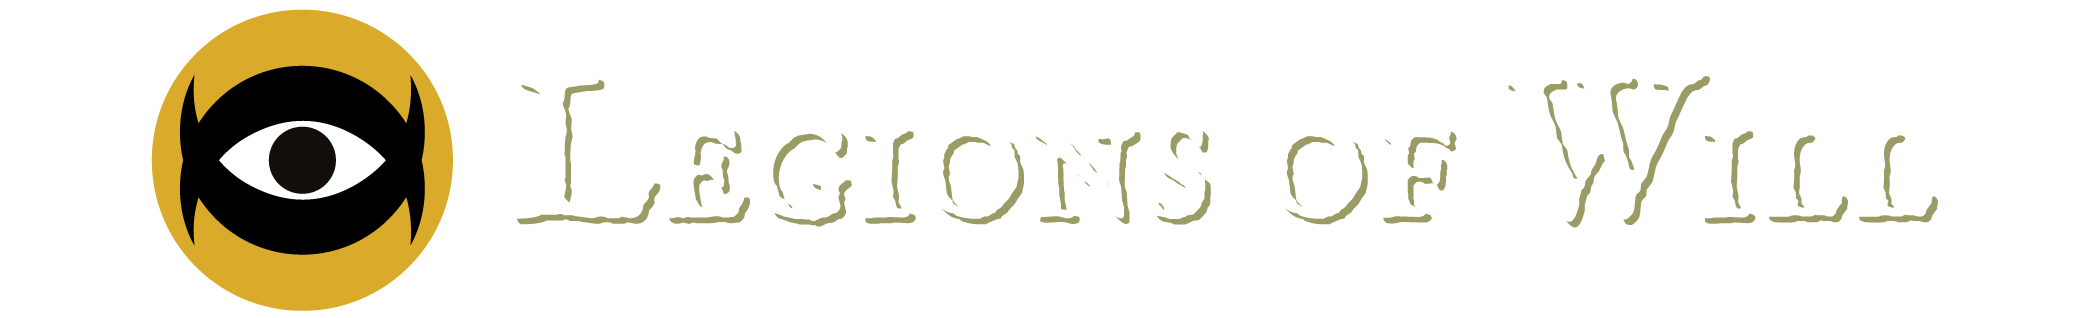 Legions of Will Logo